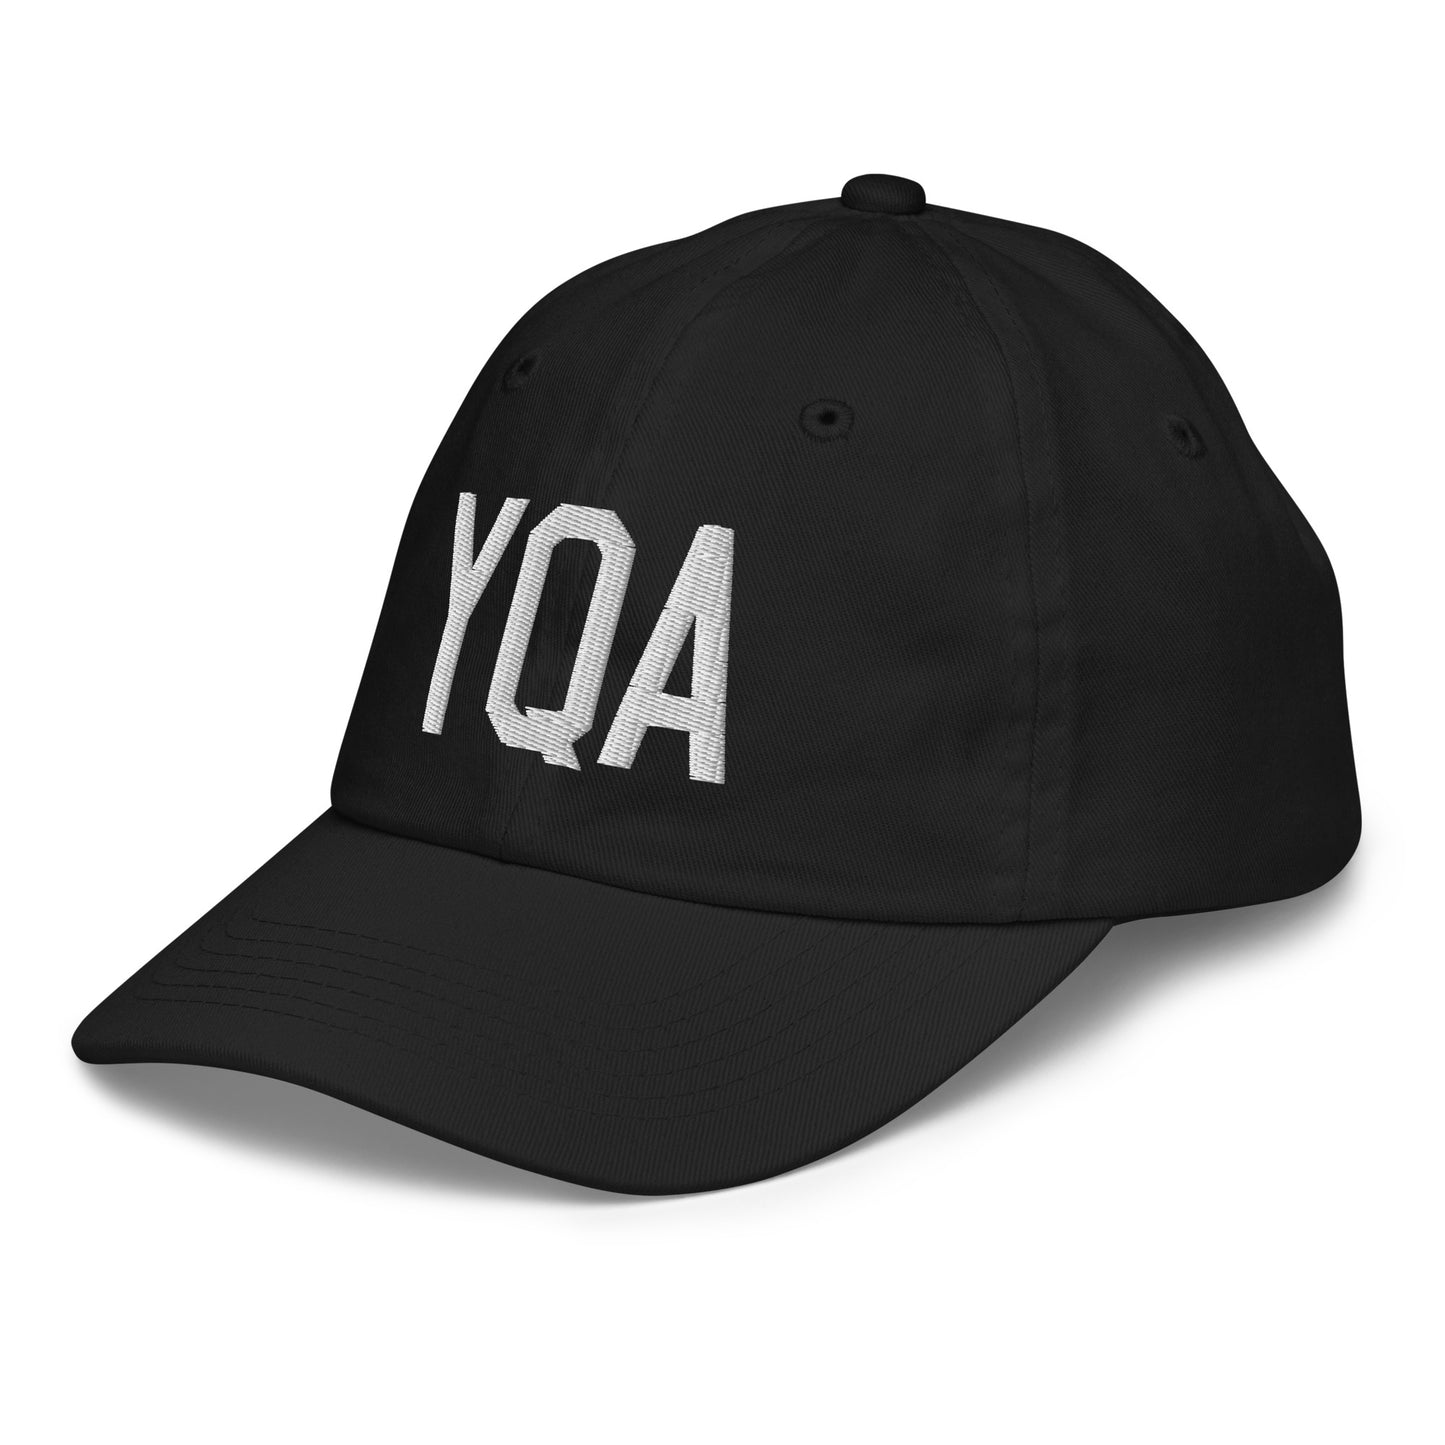 Airport Code Kid's Baseball Cap - White • YQA Muskoka • YHM Designs - Image 13